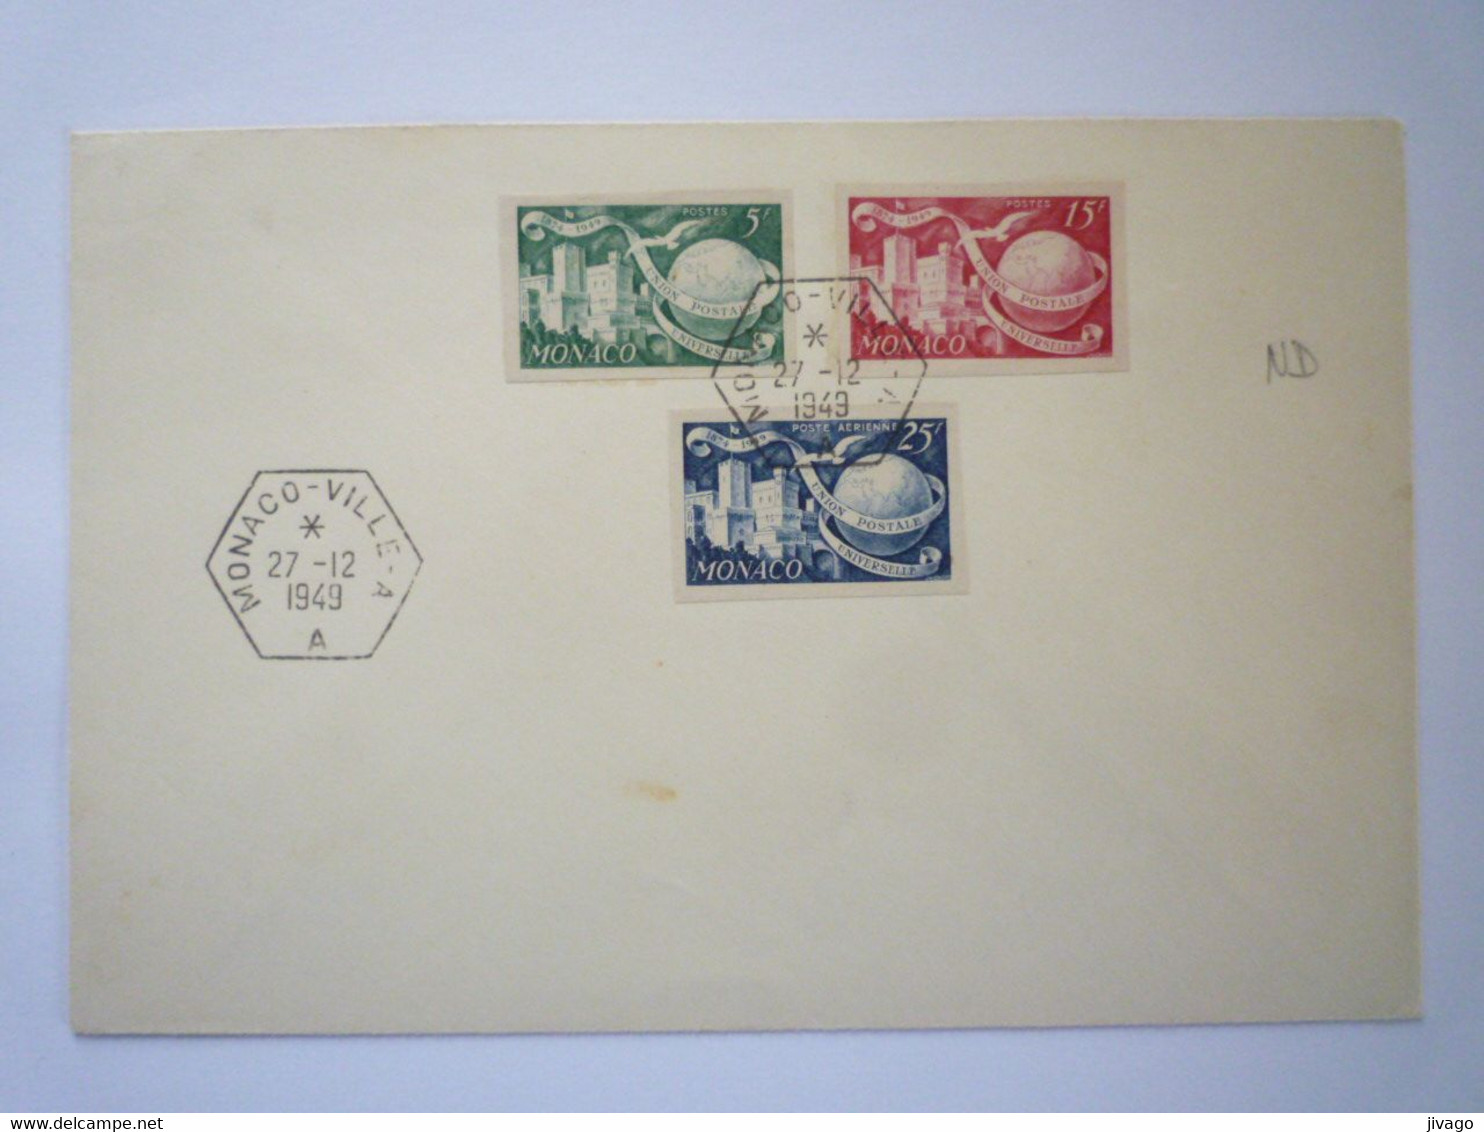 22 - M 4162  Enveloppe Au Départ De MONACO - VILLE - A   (Timbres Non Dentelés)  1949   XXX - Briefe U. Dokumente